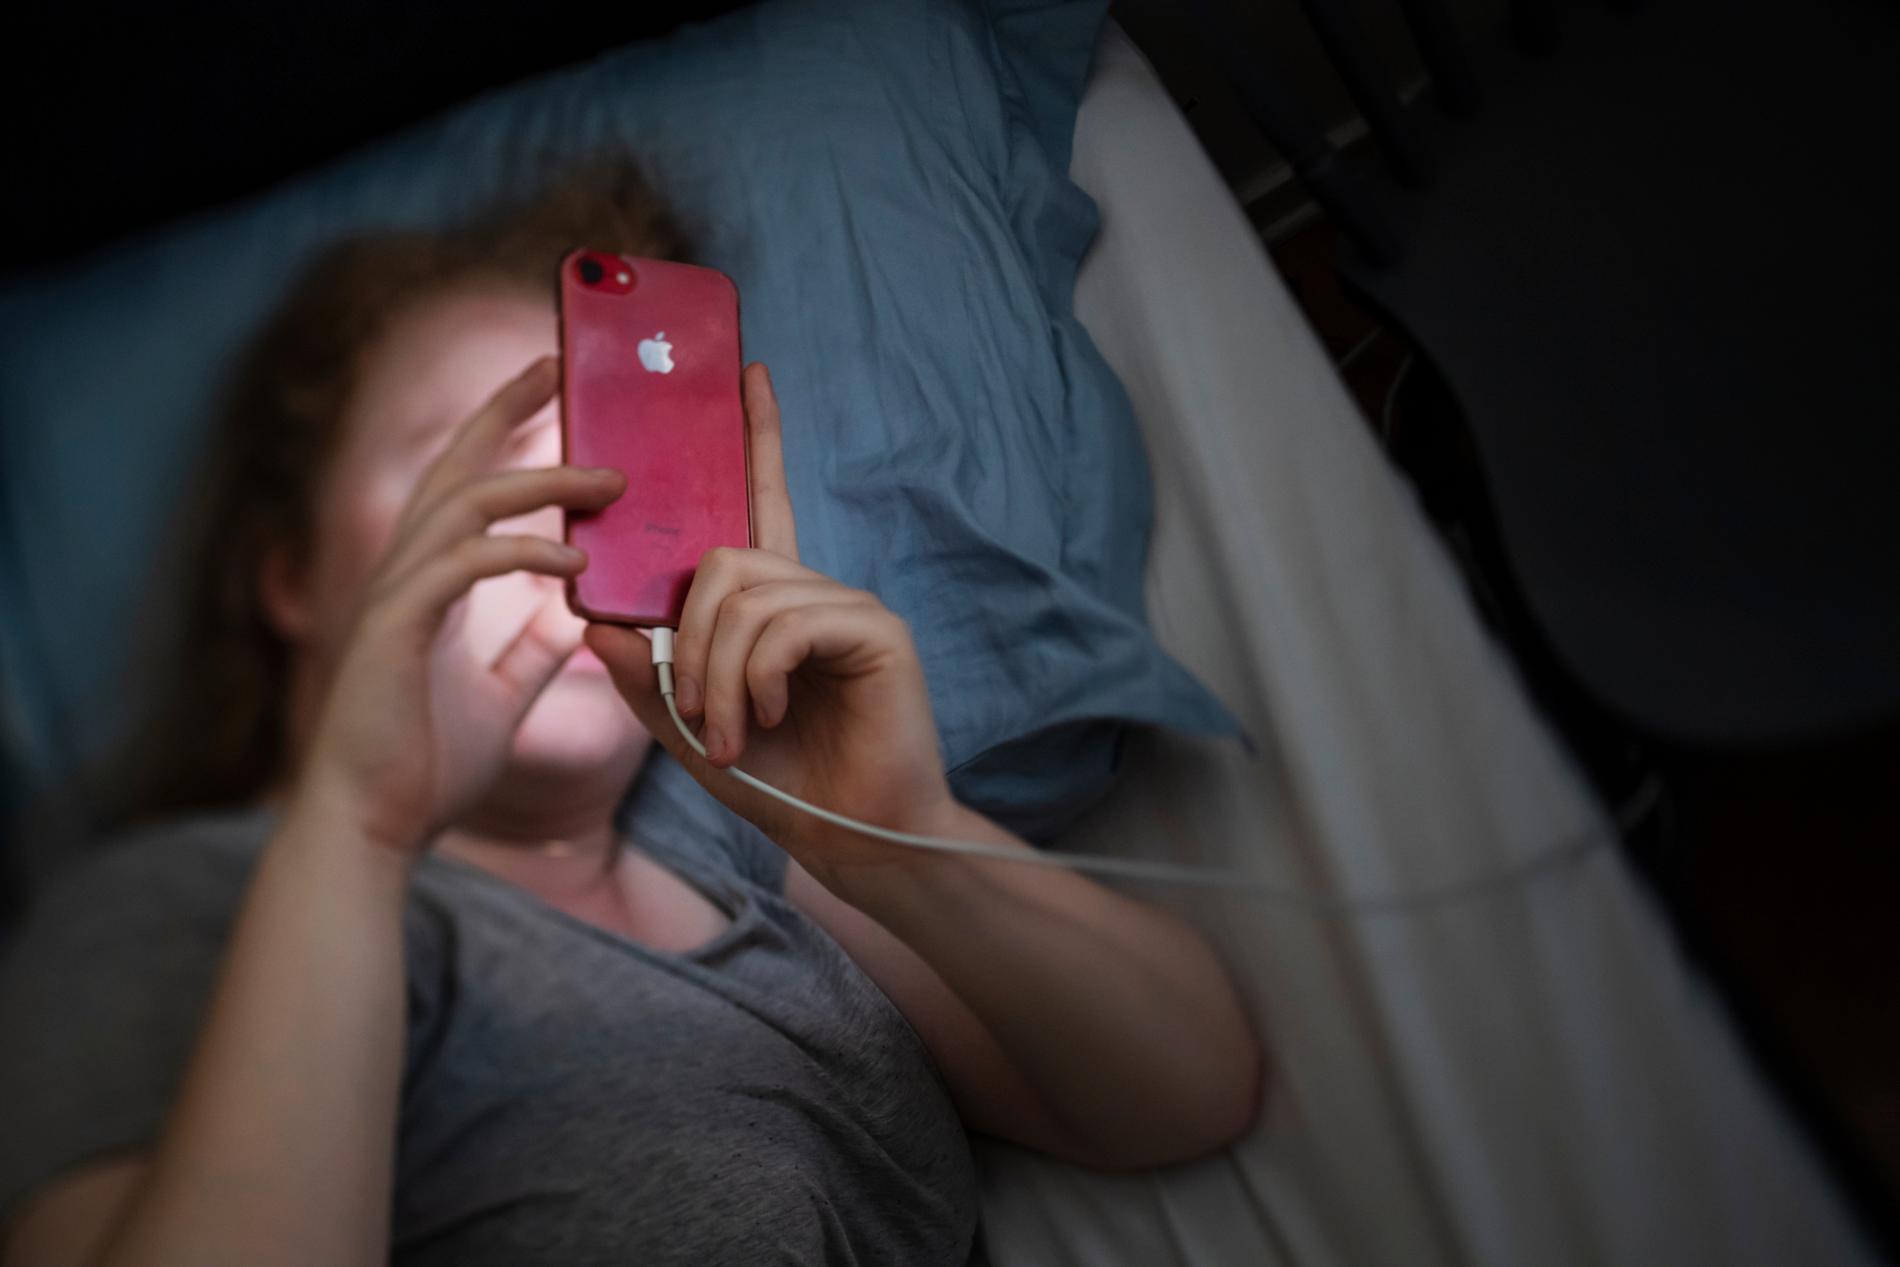 Sömnsvårigheter bland barn och unga ökar. En av anledningarna till att man har svårt att sova kan bero på mobilanvändning vid läggdags. Arkivbild.